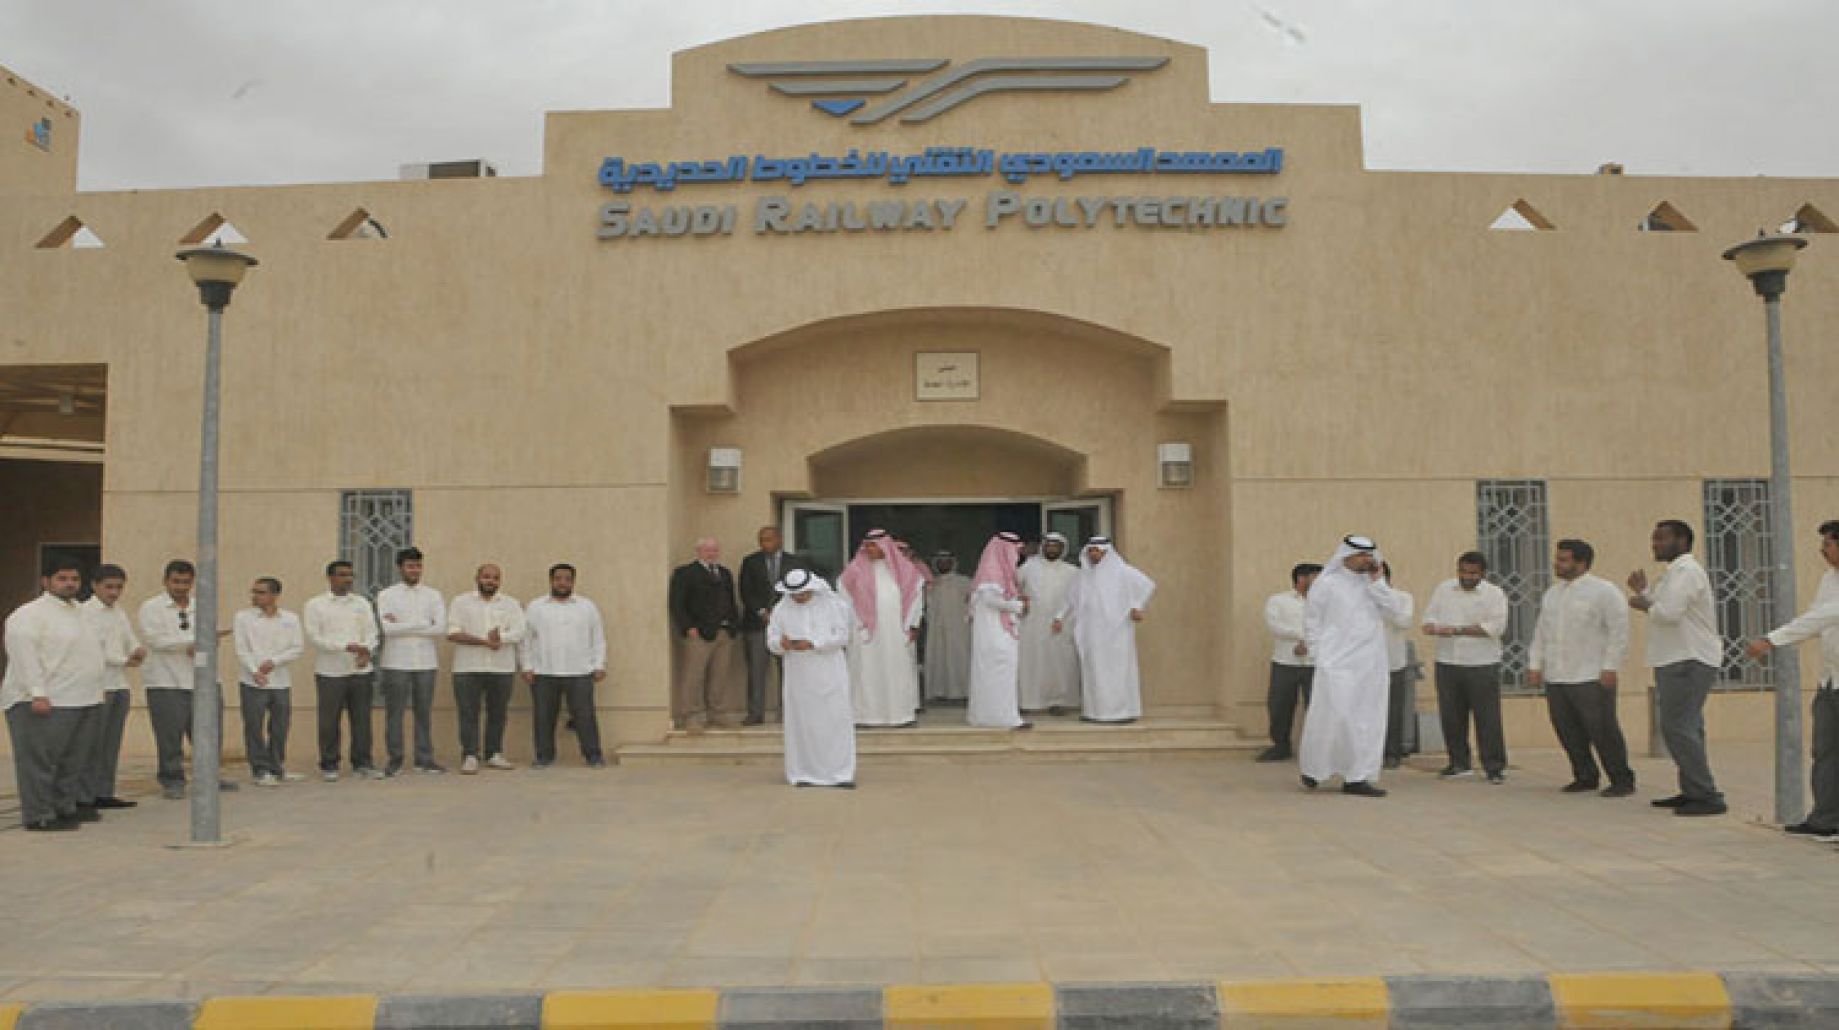 التخصصات التي يتم دراستها في المعهد السعودي التقني للخطوط الحديدية وطرق التواصل مع المعهد